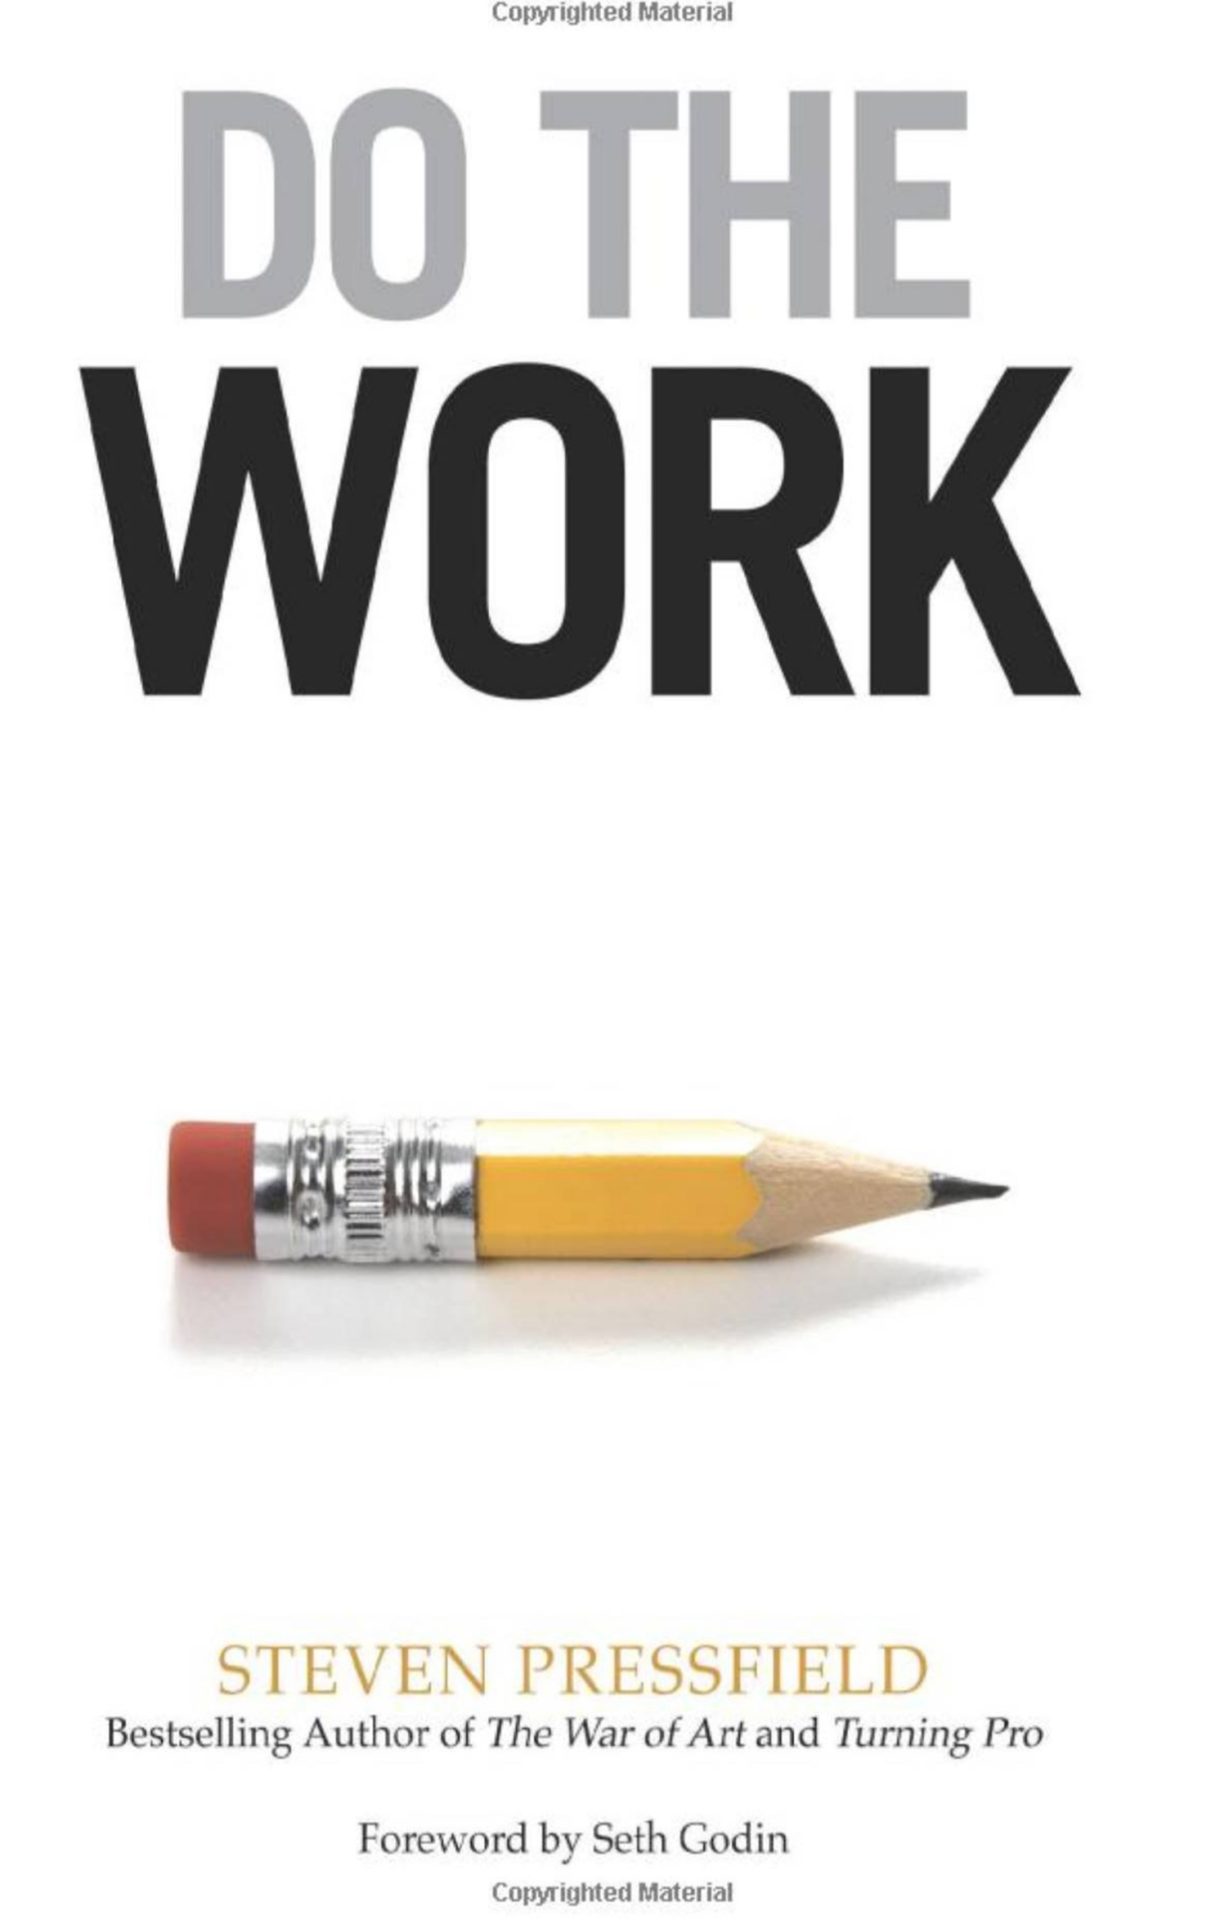 Do the Work book cover - Steven Pressfield